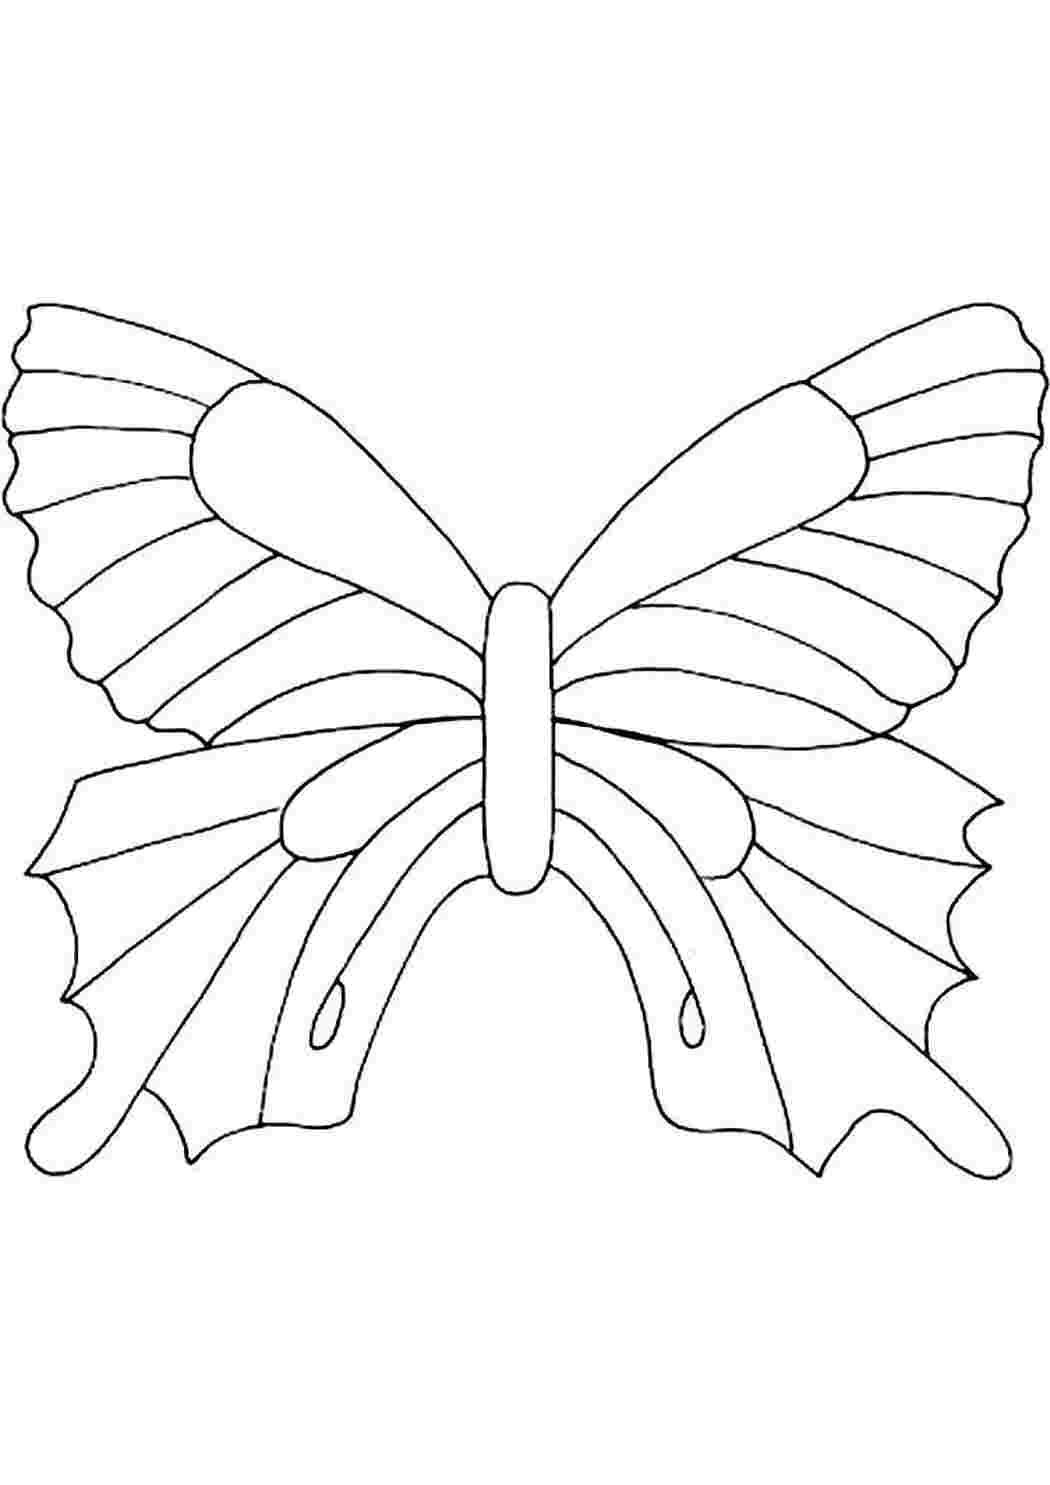 Трафарет бабочки для аппликации